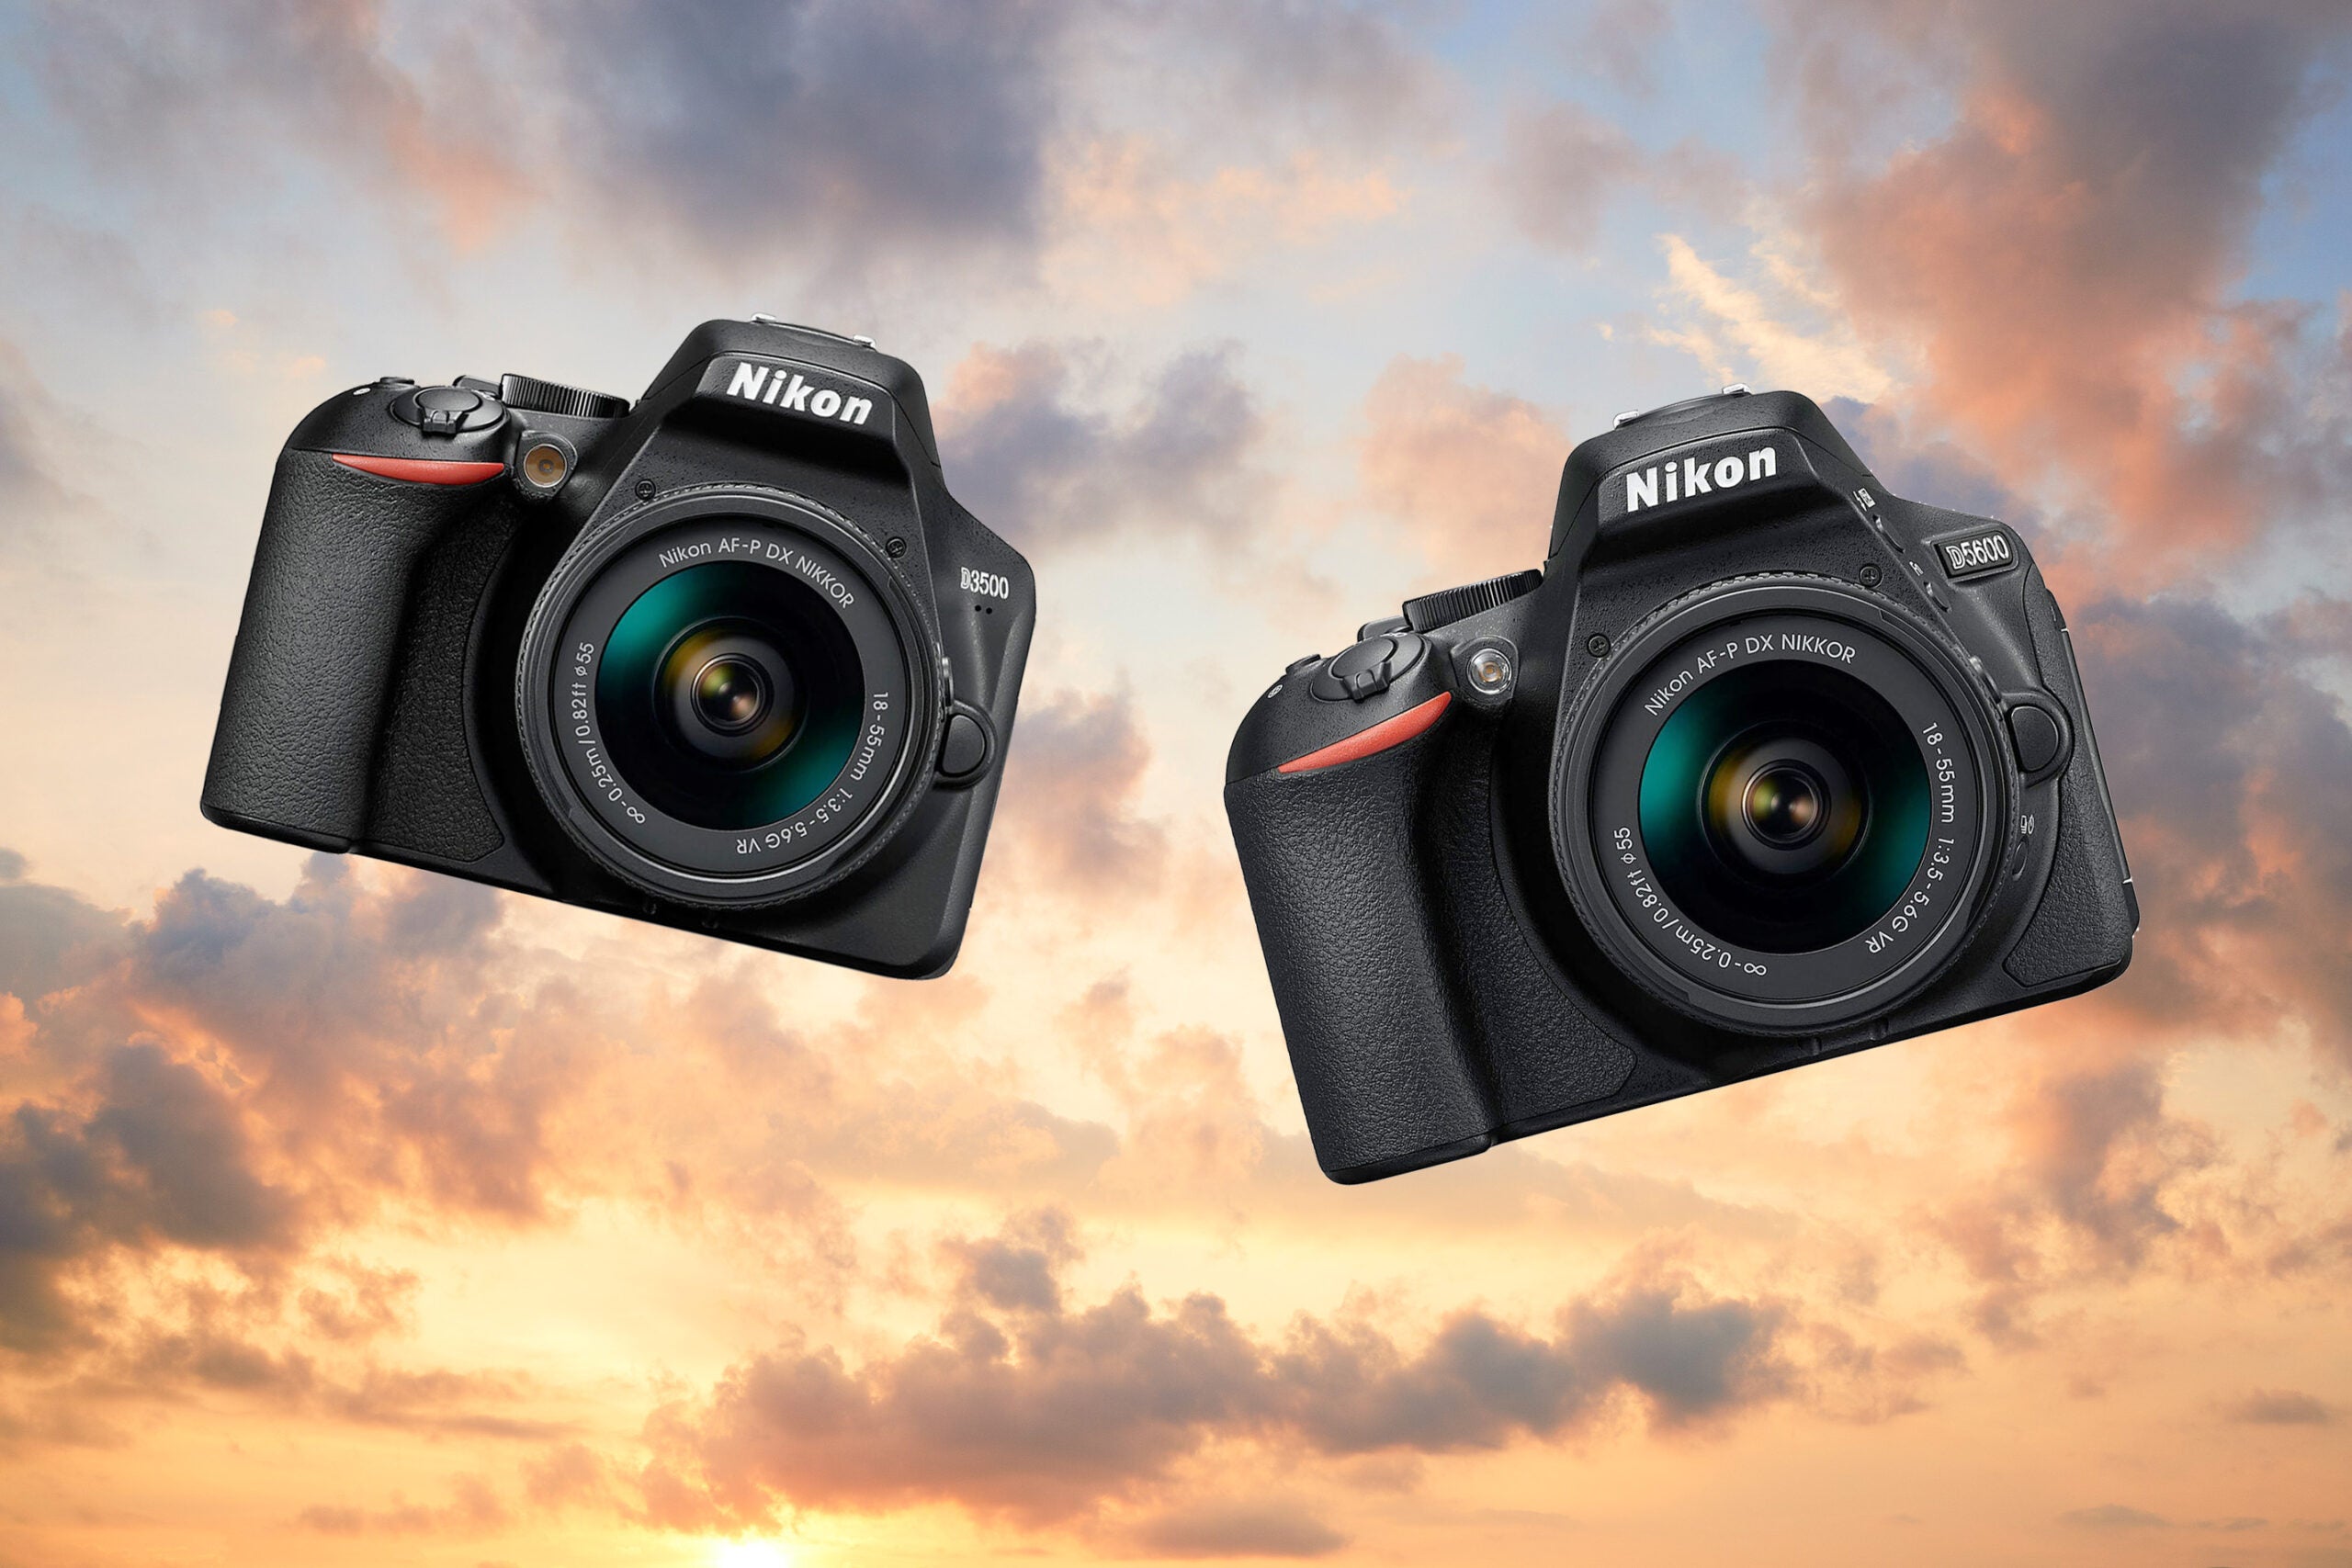 Nikon retires the D5600 & D3500 DSLRs